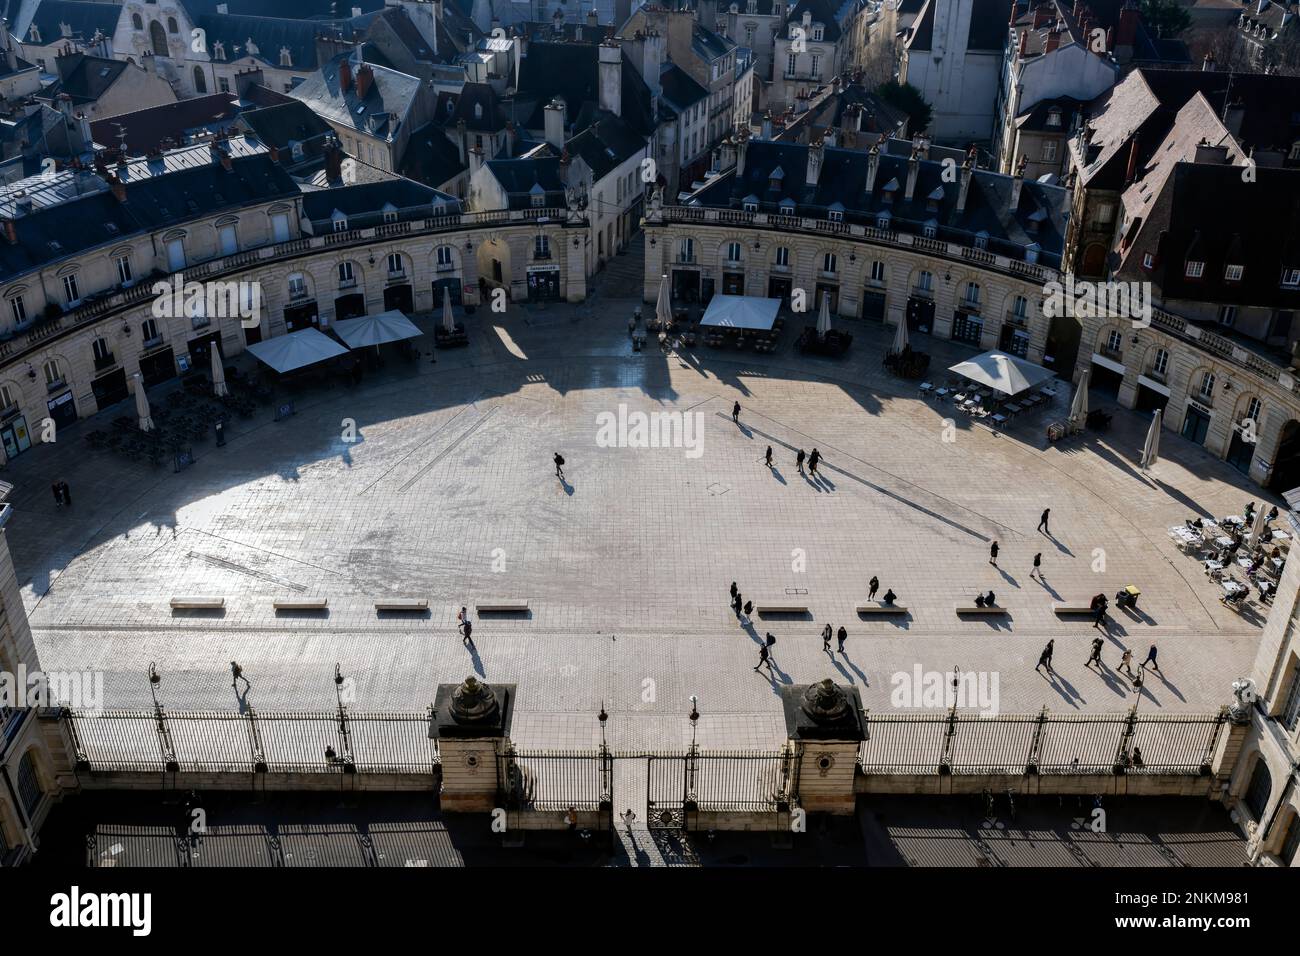 Vue aérienne de la célèbre « place de la libération », Dijon, France Banque D'Images